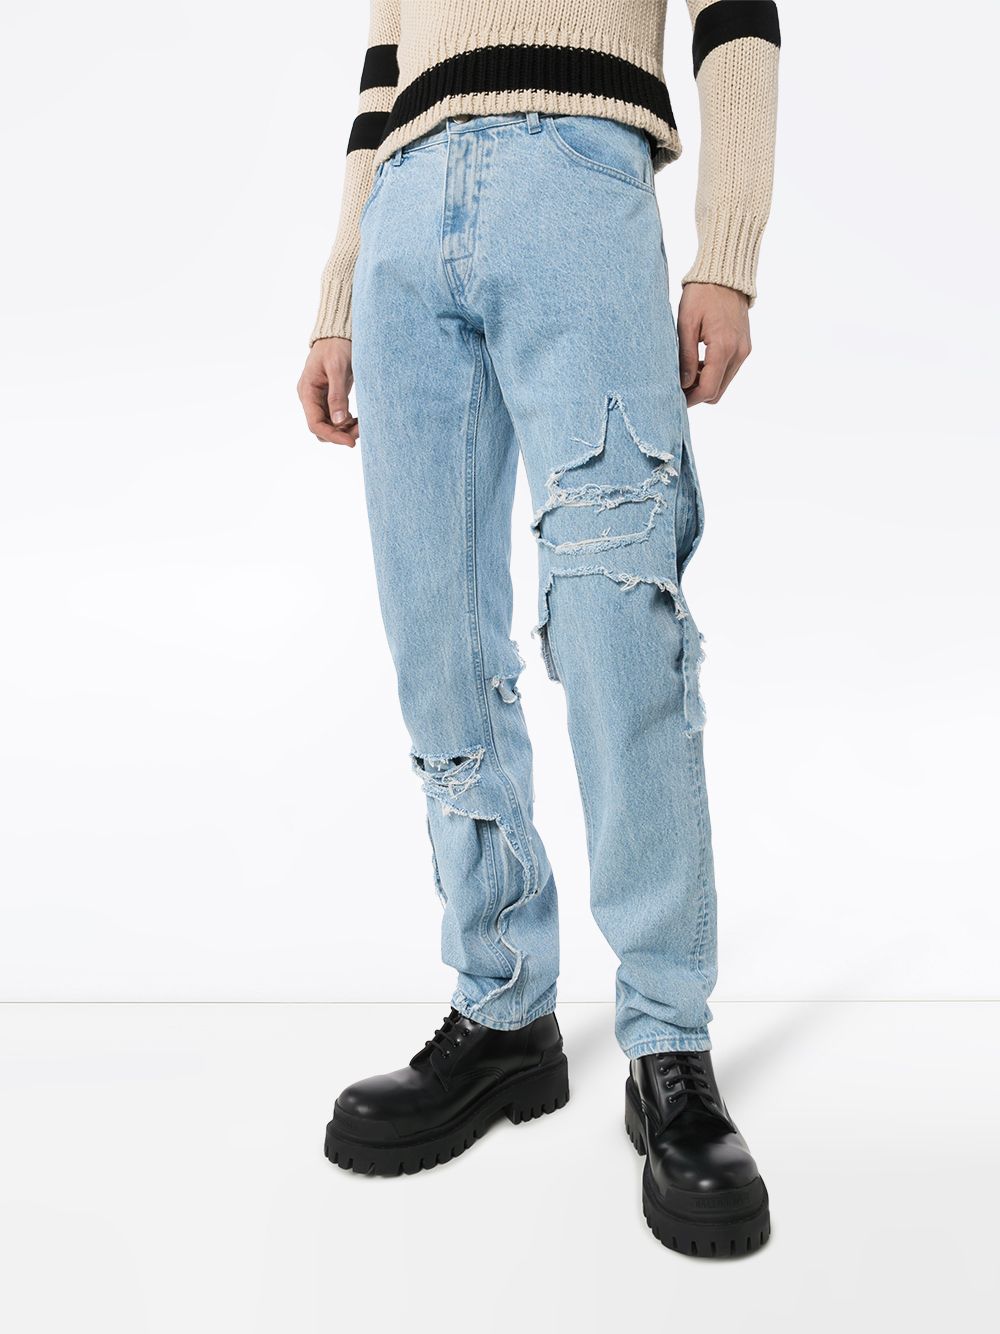 фото Raf simons многослойные джинсы с эффектом потертости